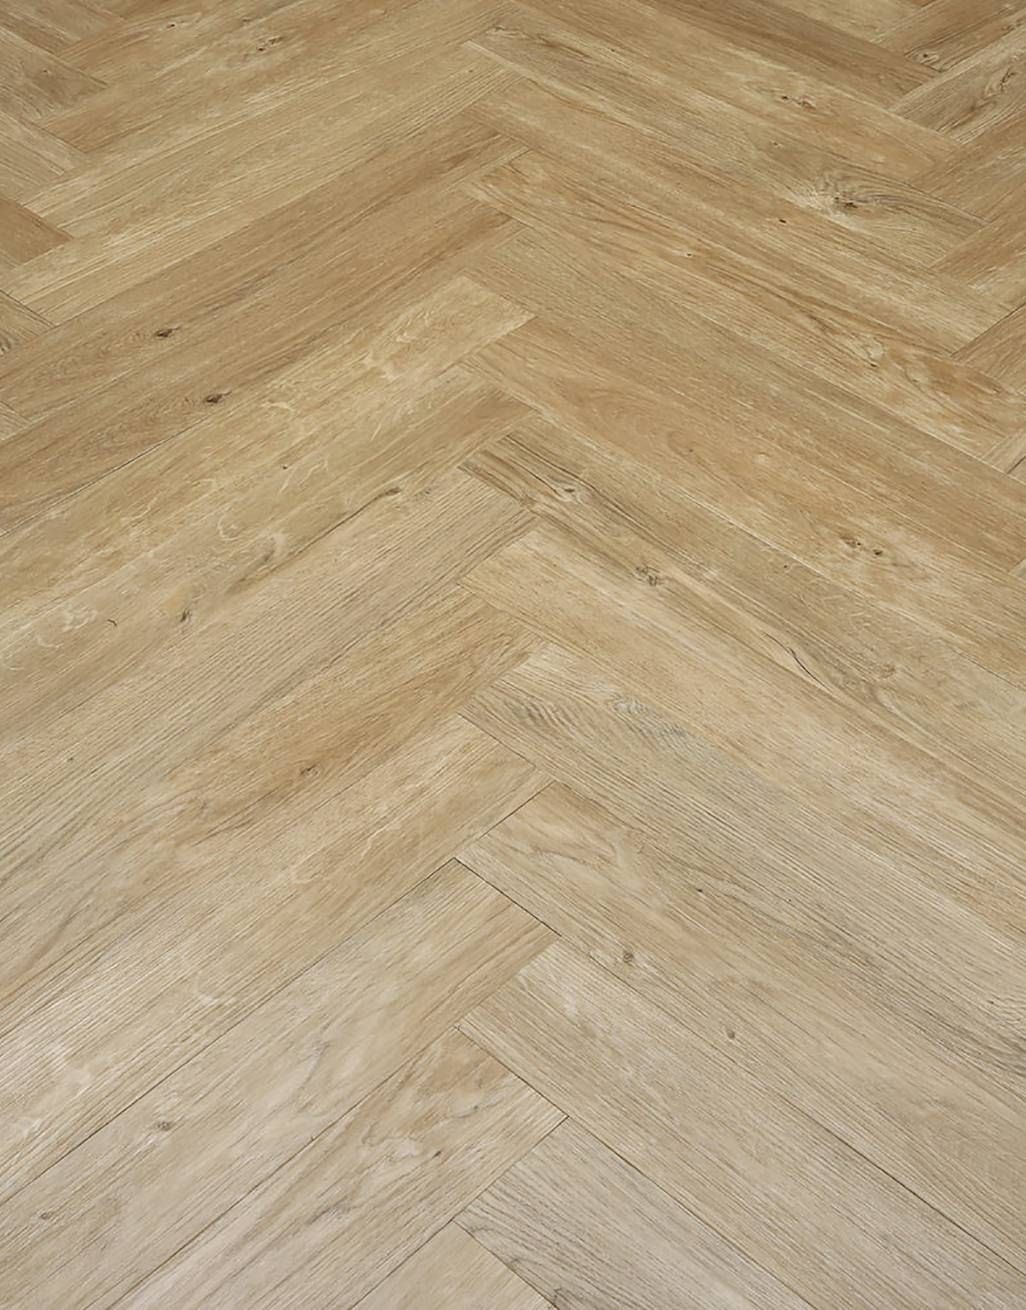 Herringbone Natural Oak Lvt Flooring, Herringbone Luxury Vinyl Plank Flooring